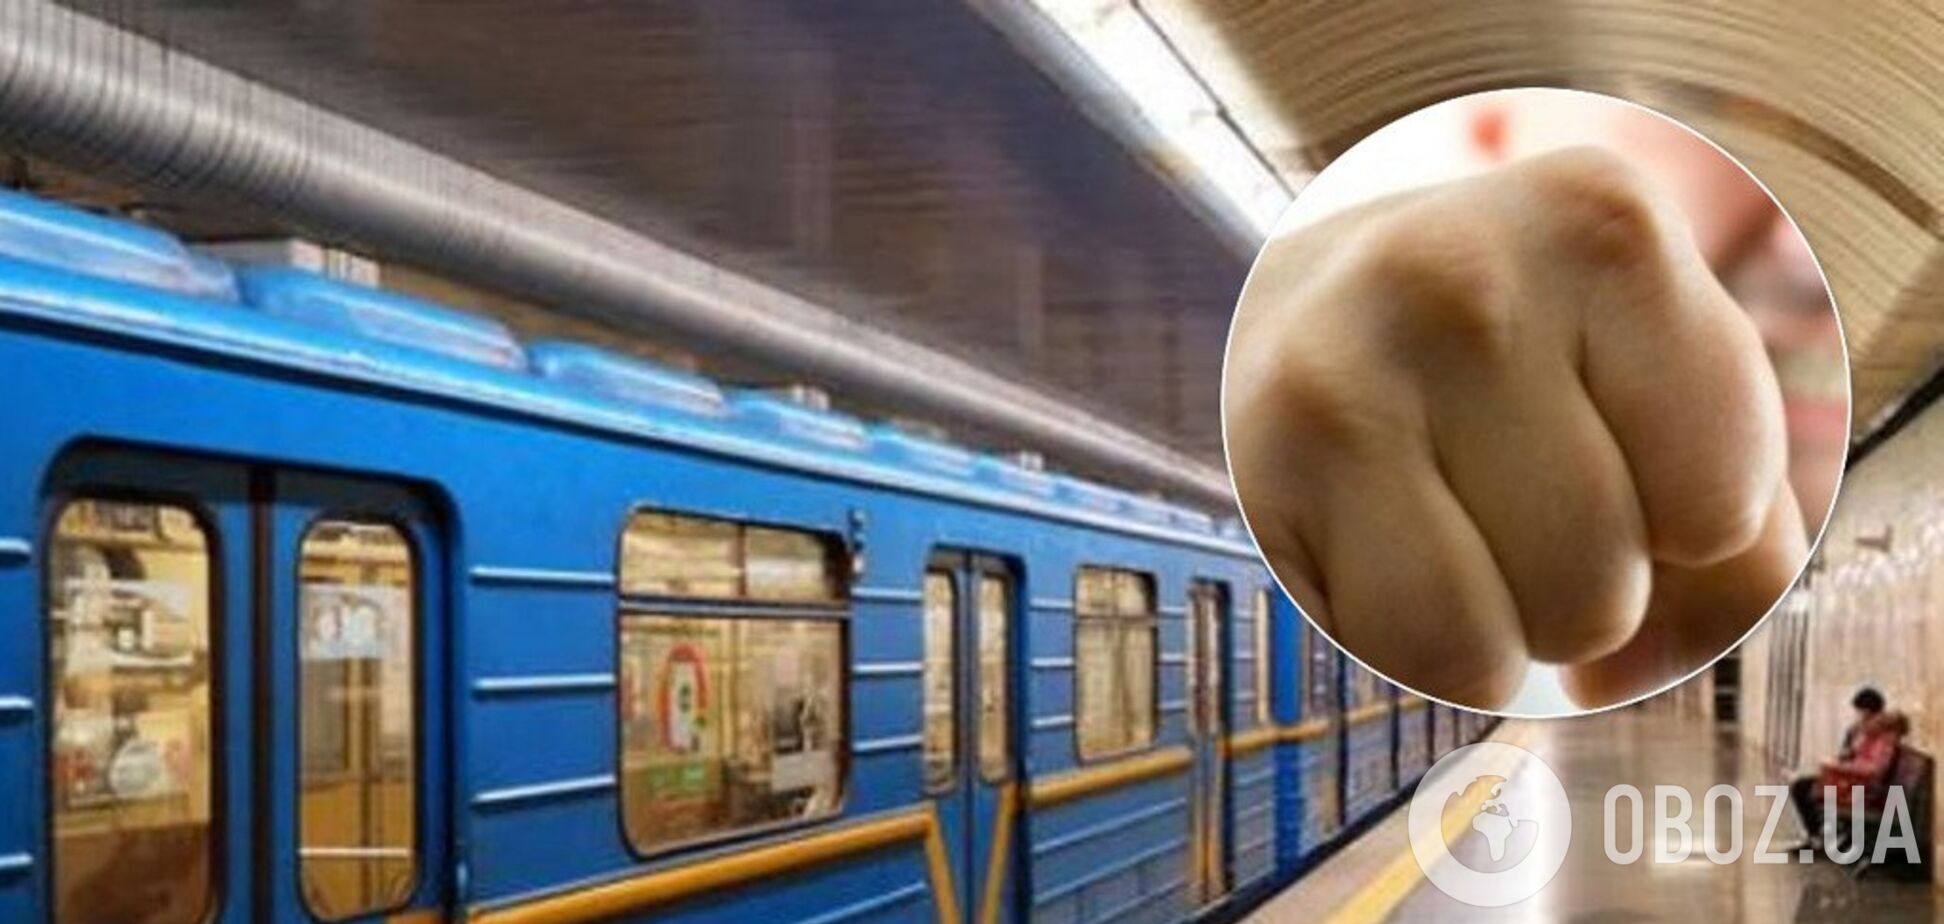 В Киеве пассажиры устроили самосуд над вором в метро. Видео 18+